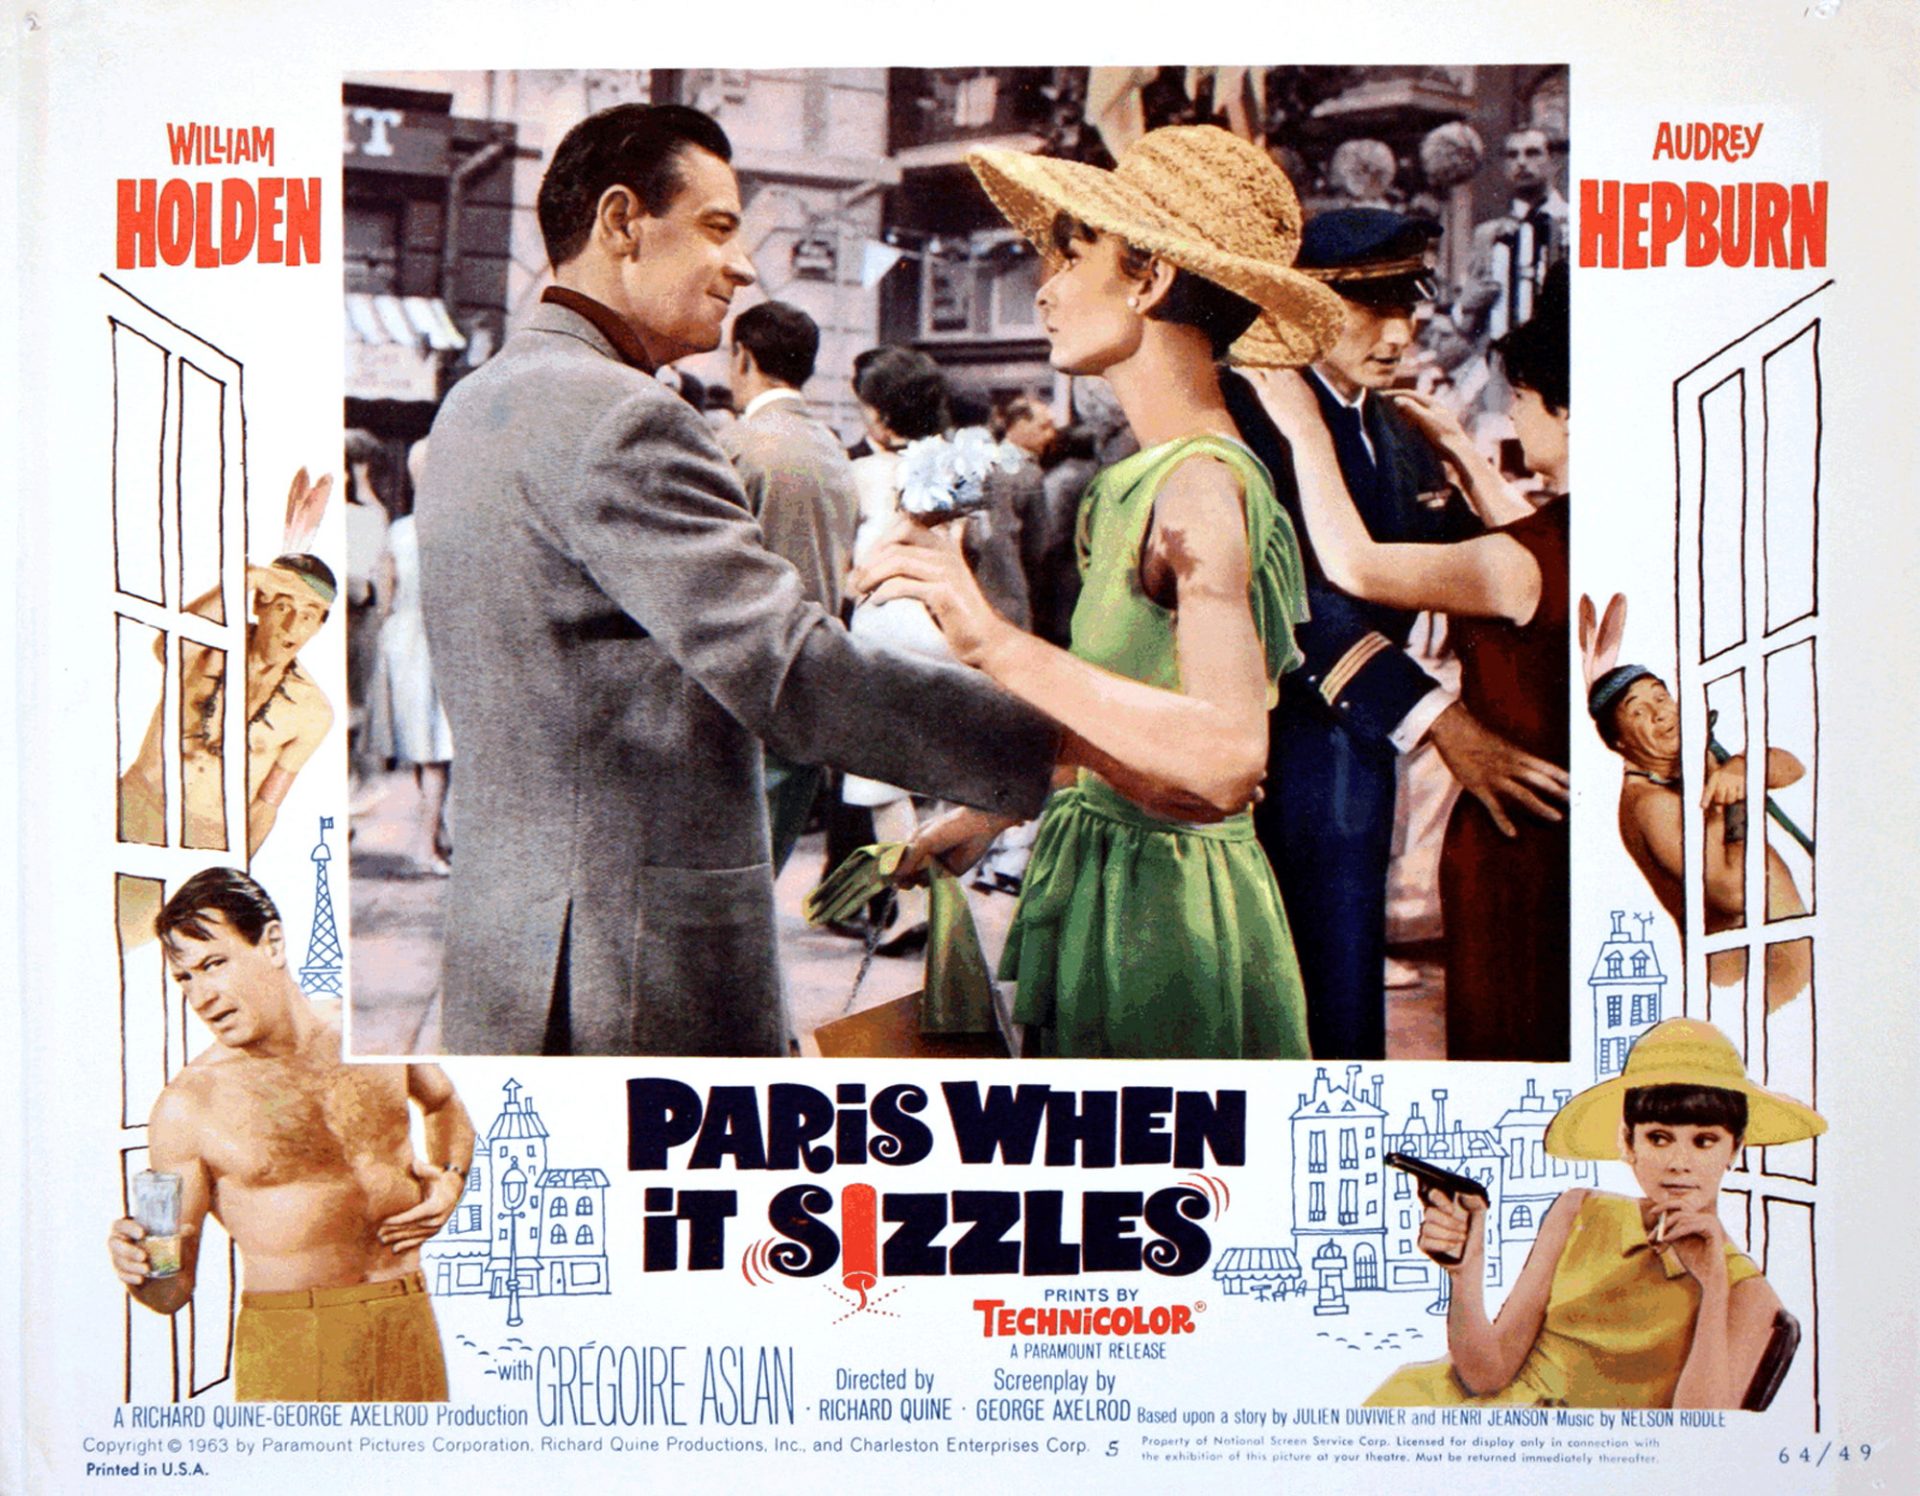 Audrey Hepburn, Paris when it sizzles (1964) starring William Holden